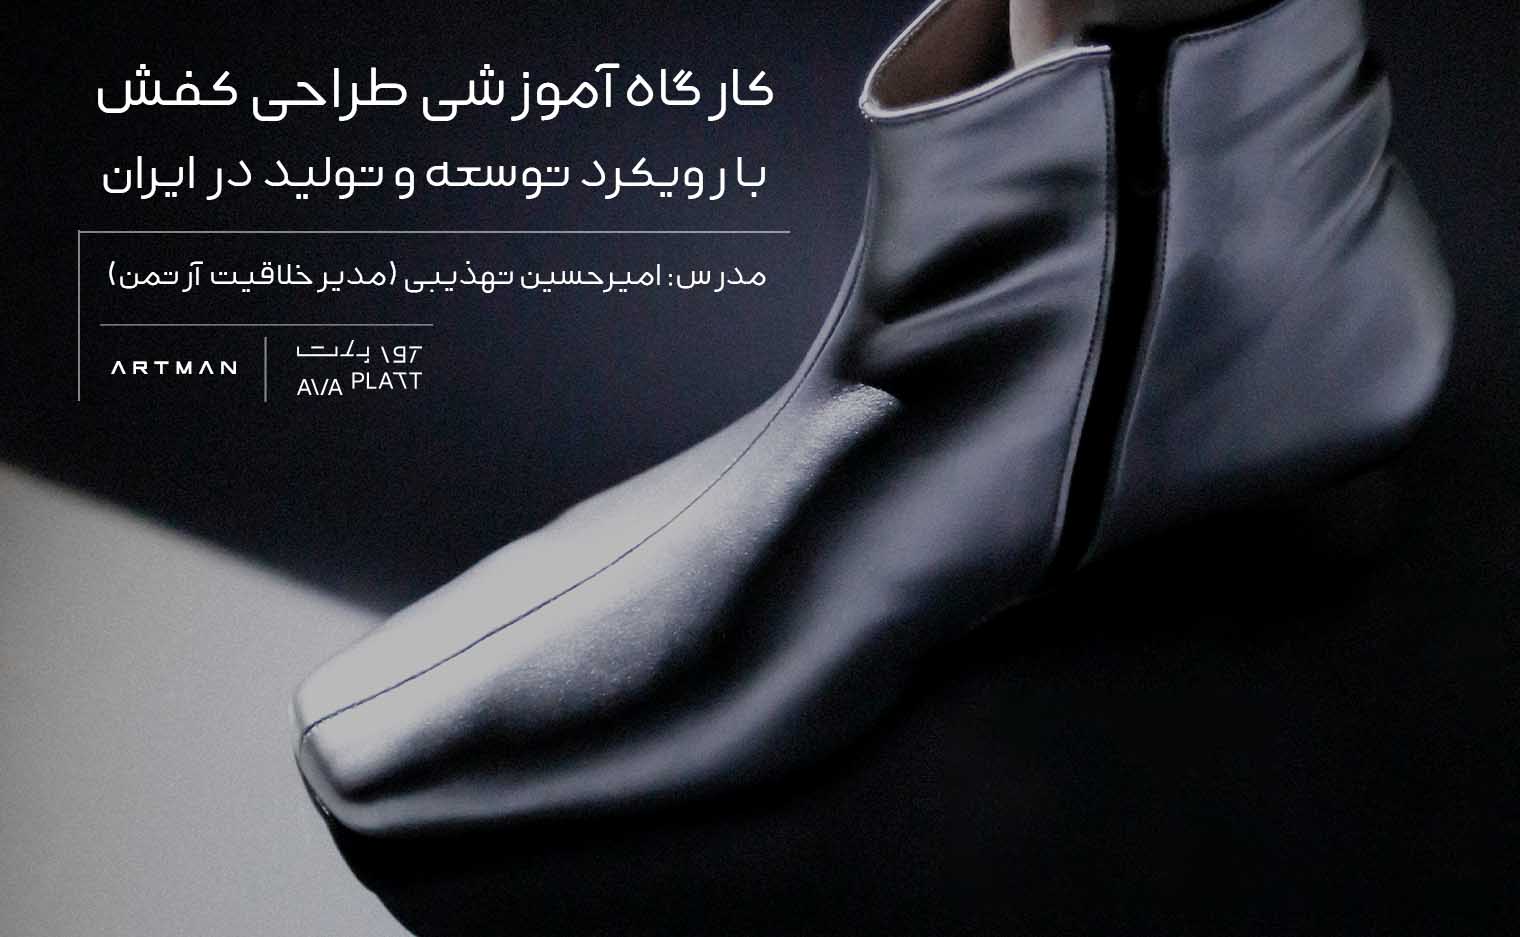 کارگاه طراحی کفش با رویکرد توسعه و تولید در ایران